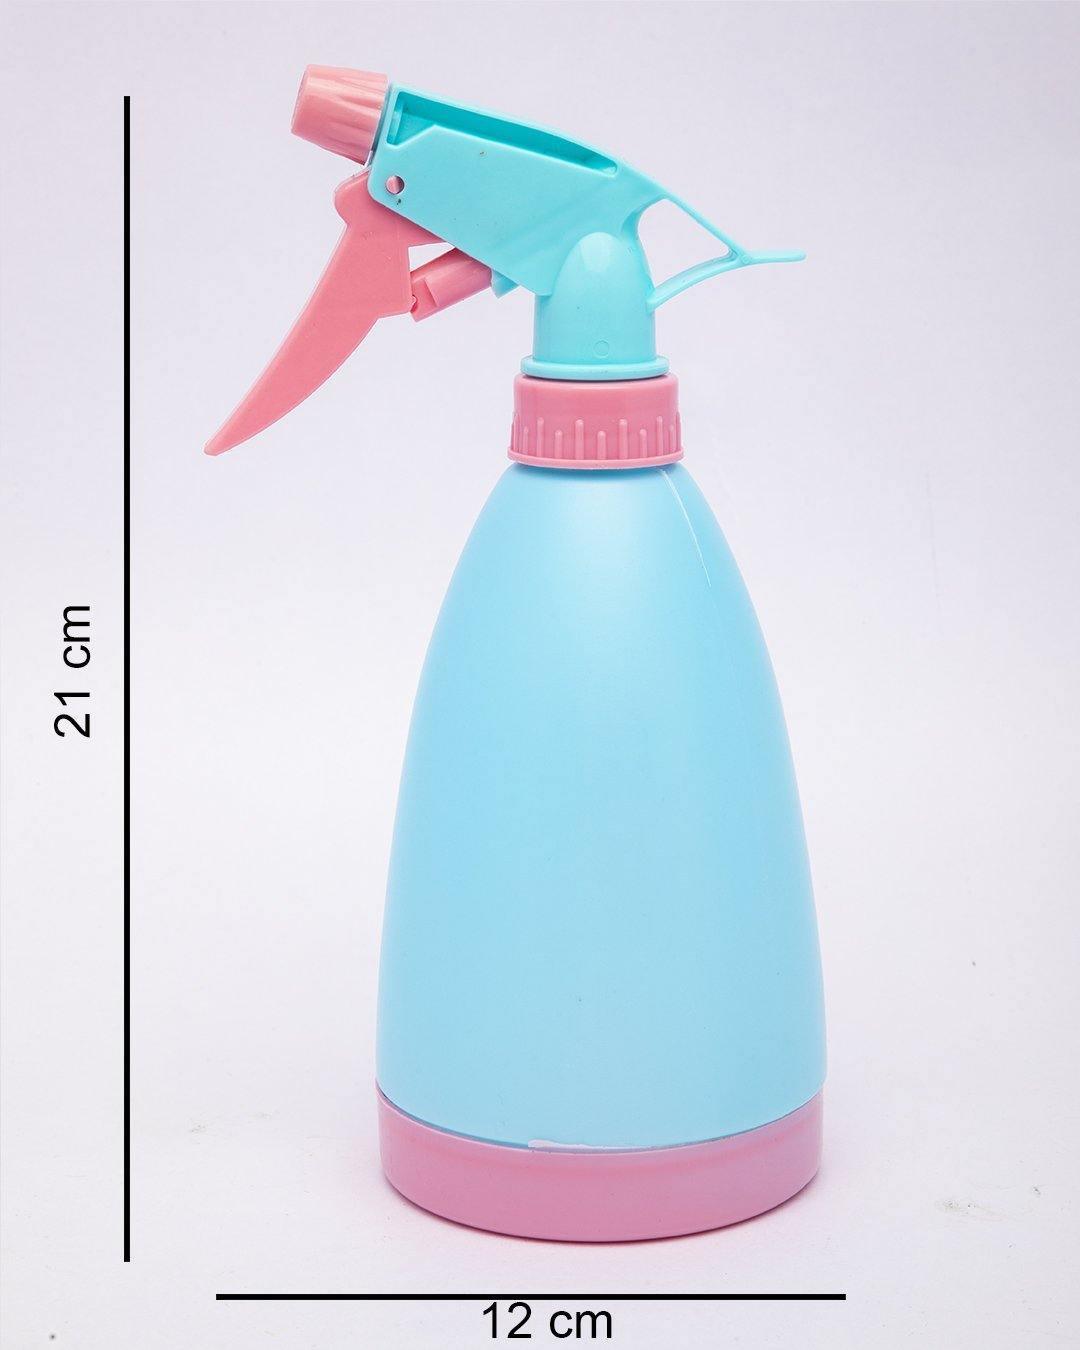 Spray Bottle, Blue, Plastic, Set of 2, 500 mL - MARKET 99